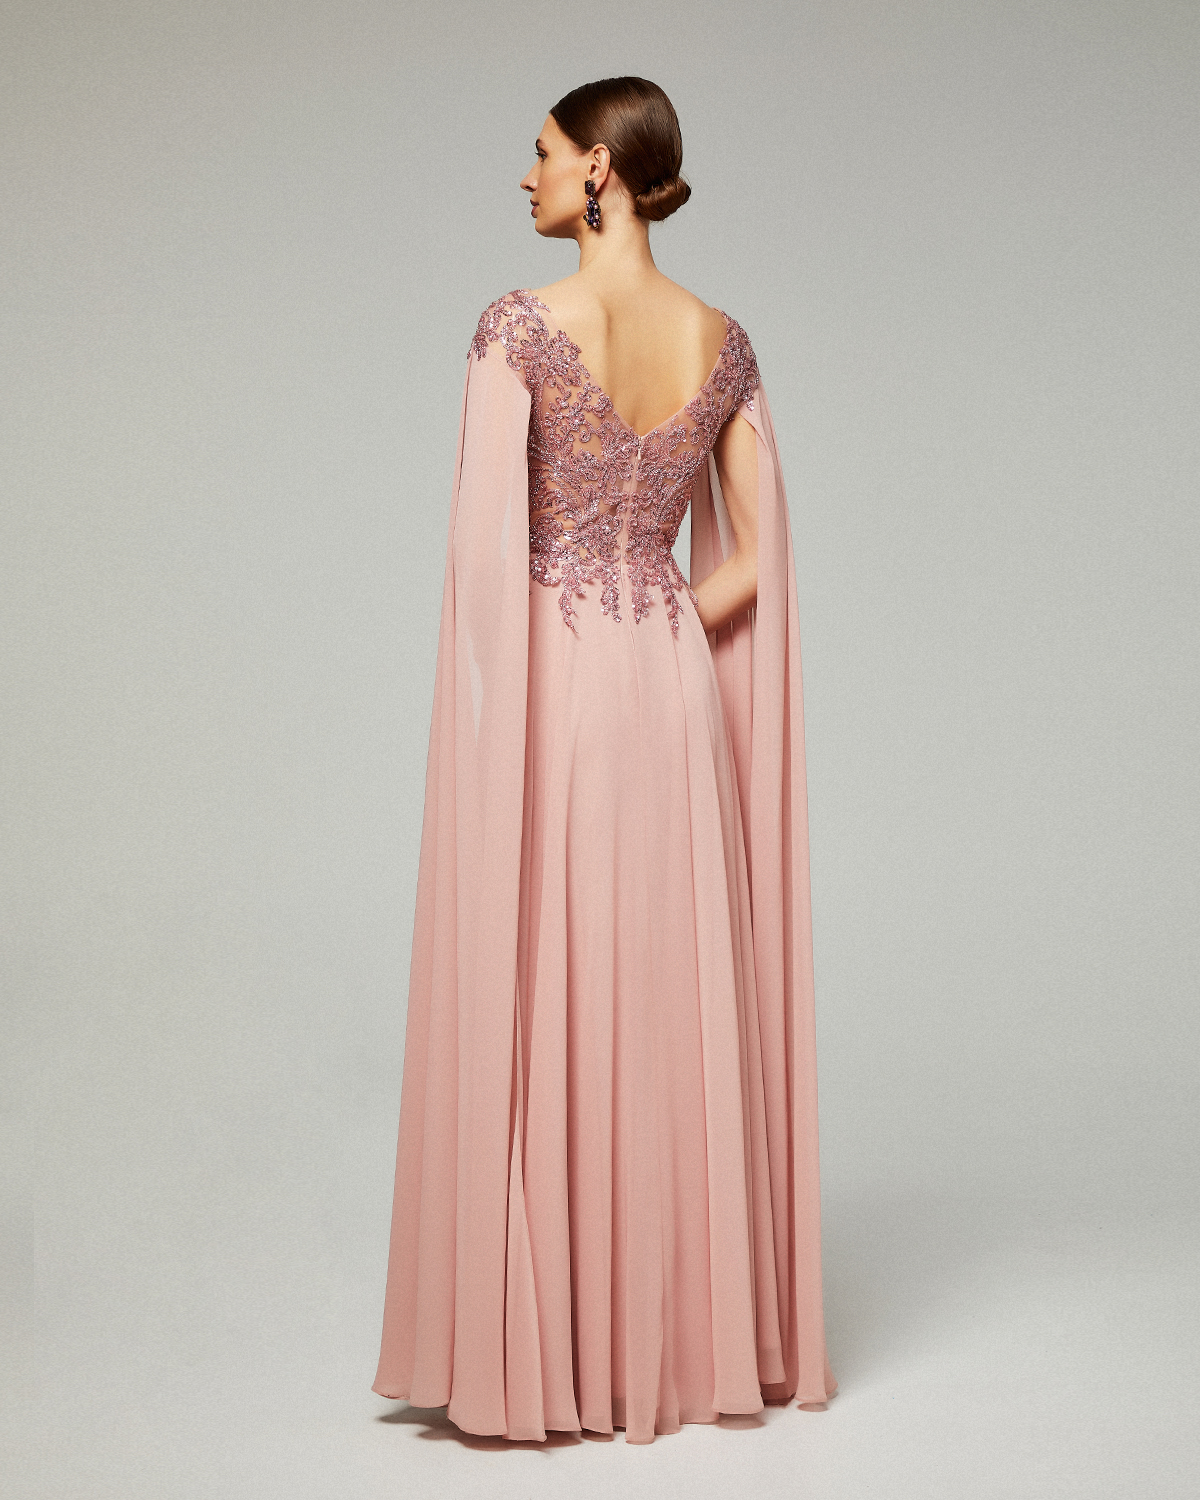 Κλασικό φόρεμα μακρύ  από μουσελίνα με ολοκέντητο δαντελένιο τοπ με μακριά μανίκια